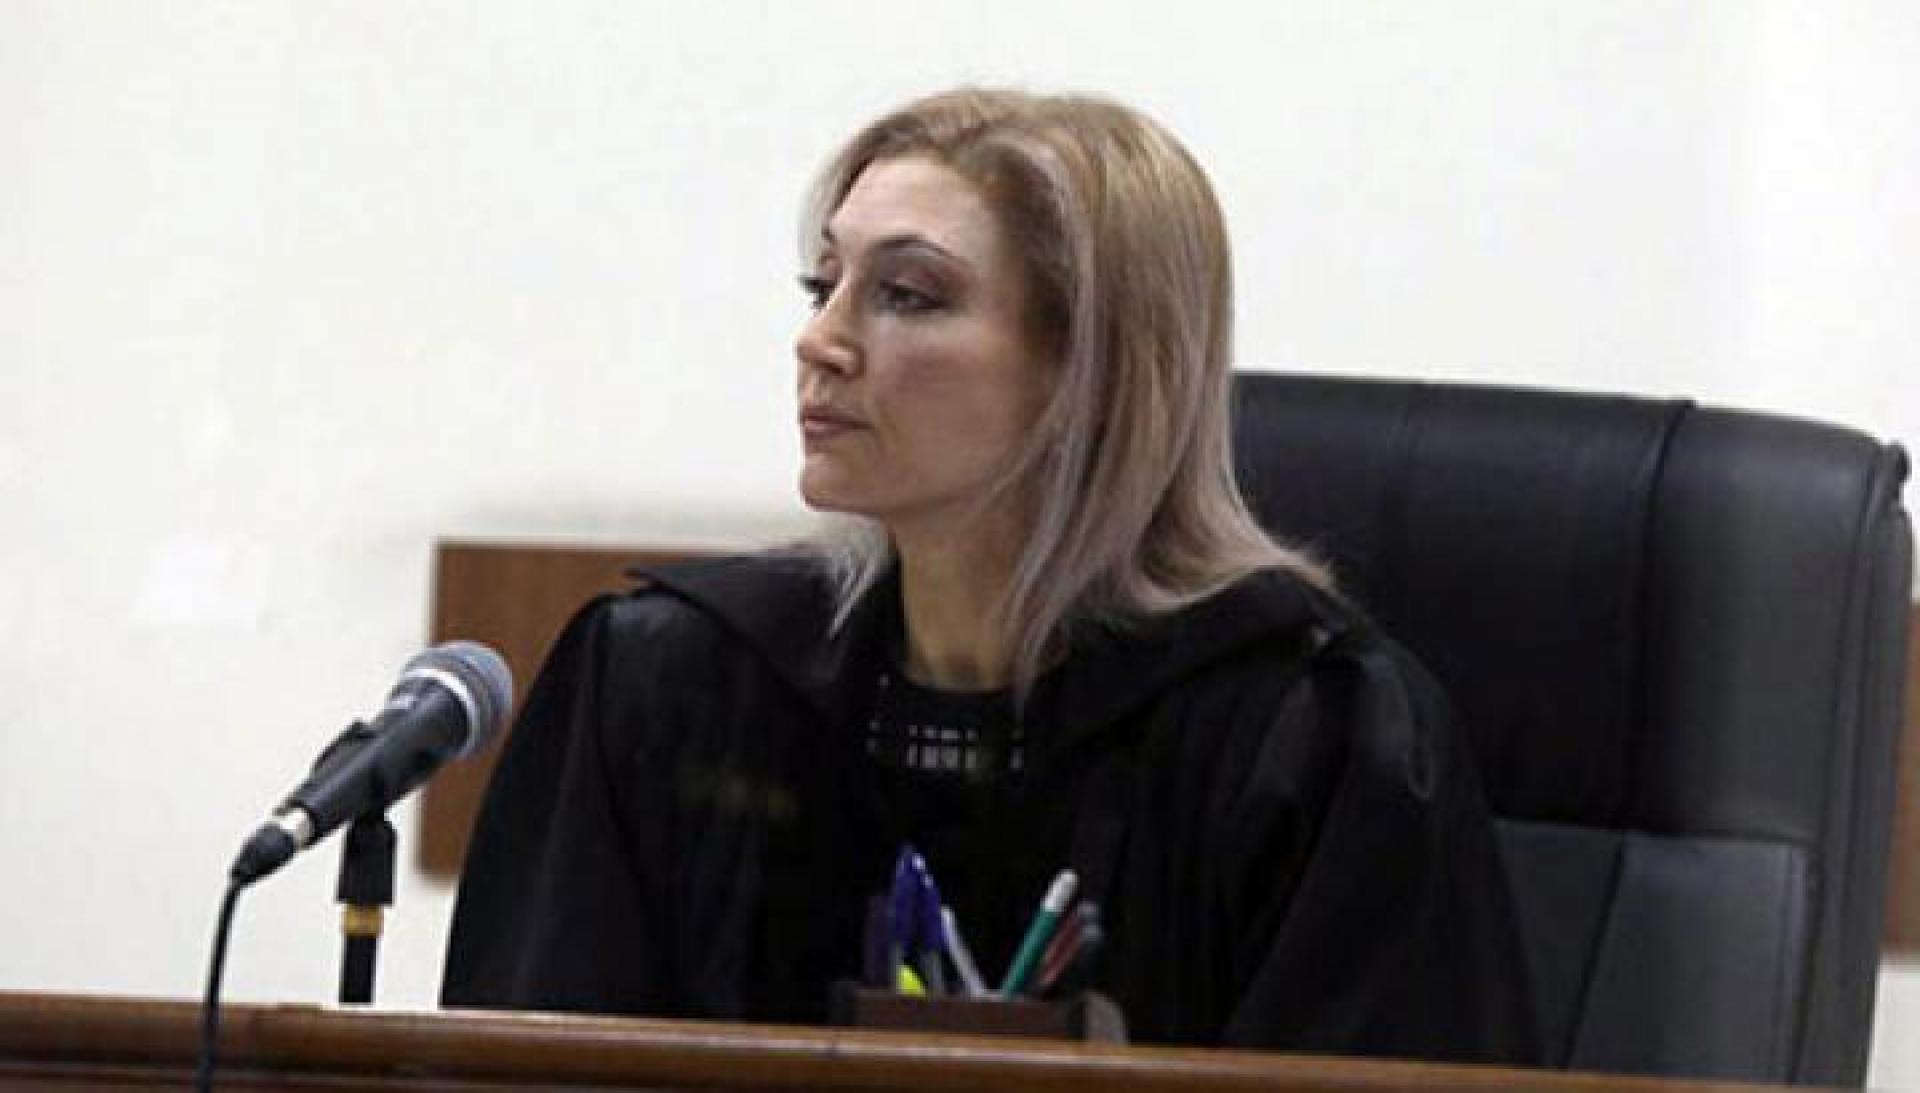 «Սիլվայի գործով» դատավորը քննում է թարգմանչին բացարկ հայտնելու մասին միջնորդությունը